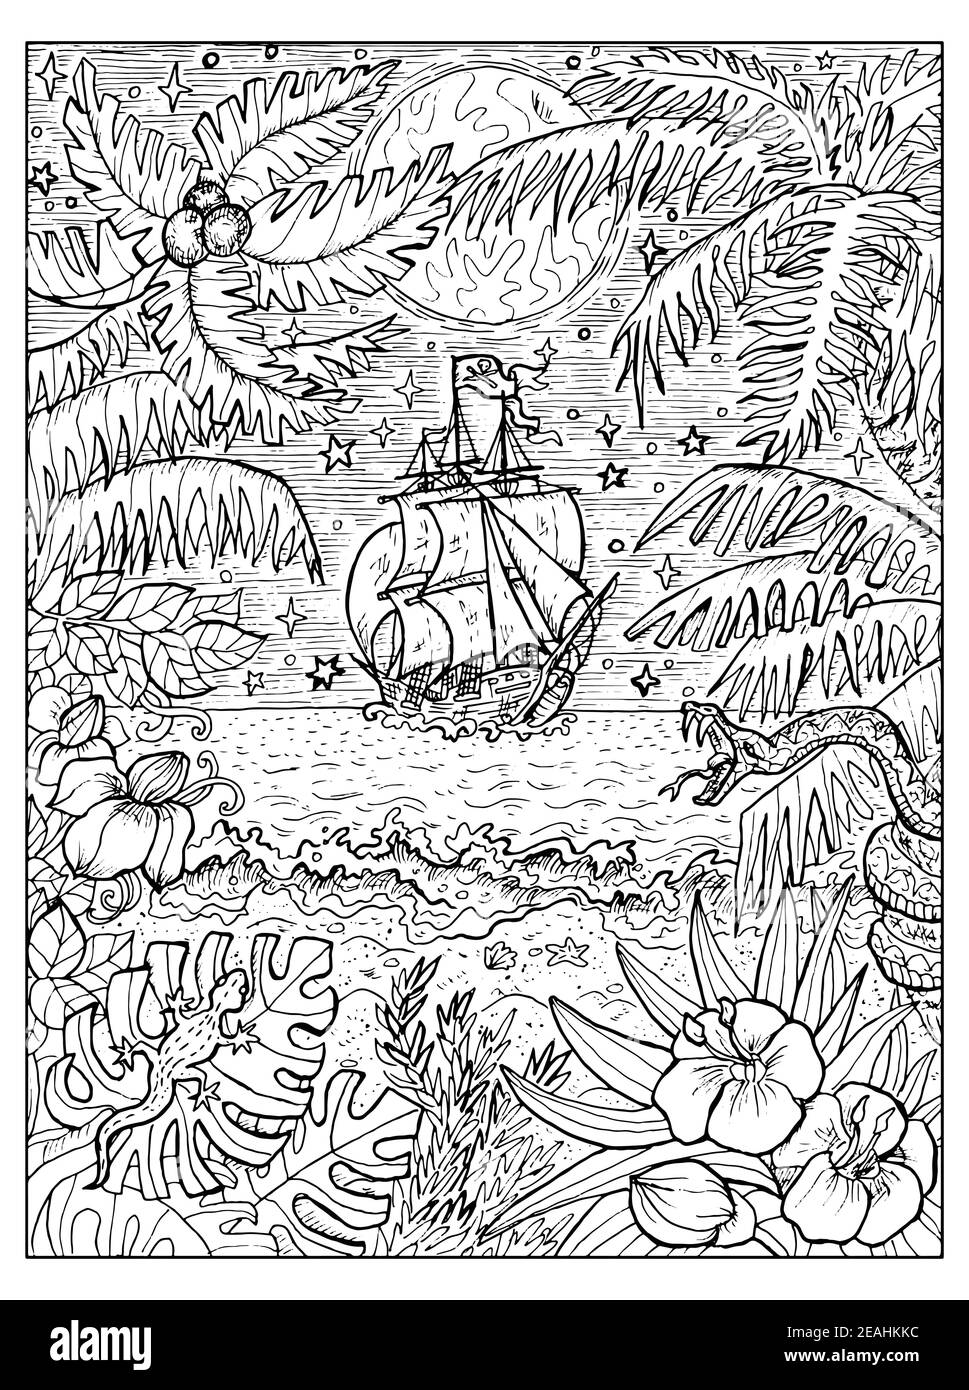 Illustrazione marina in bianco e nero con vecchia barca a vela e natura selvaggia dell'isola del tesoro con palme e mare. Disegni nautici vettoriali, avventura Illustrazione Vettoriale